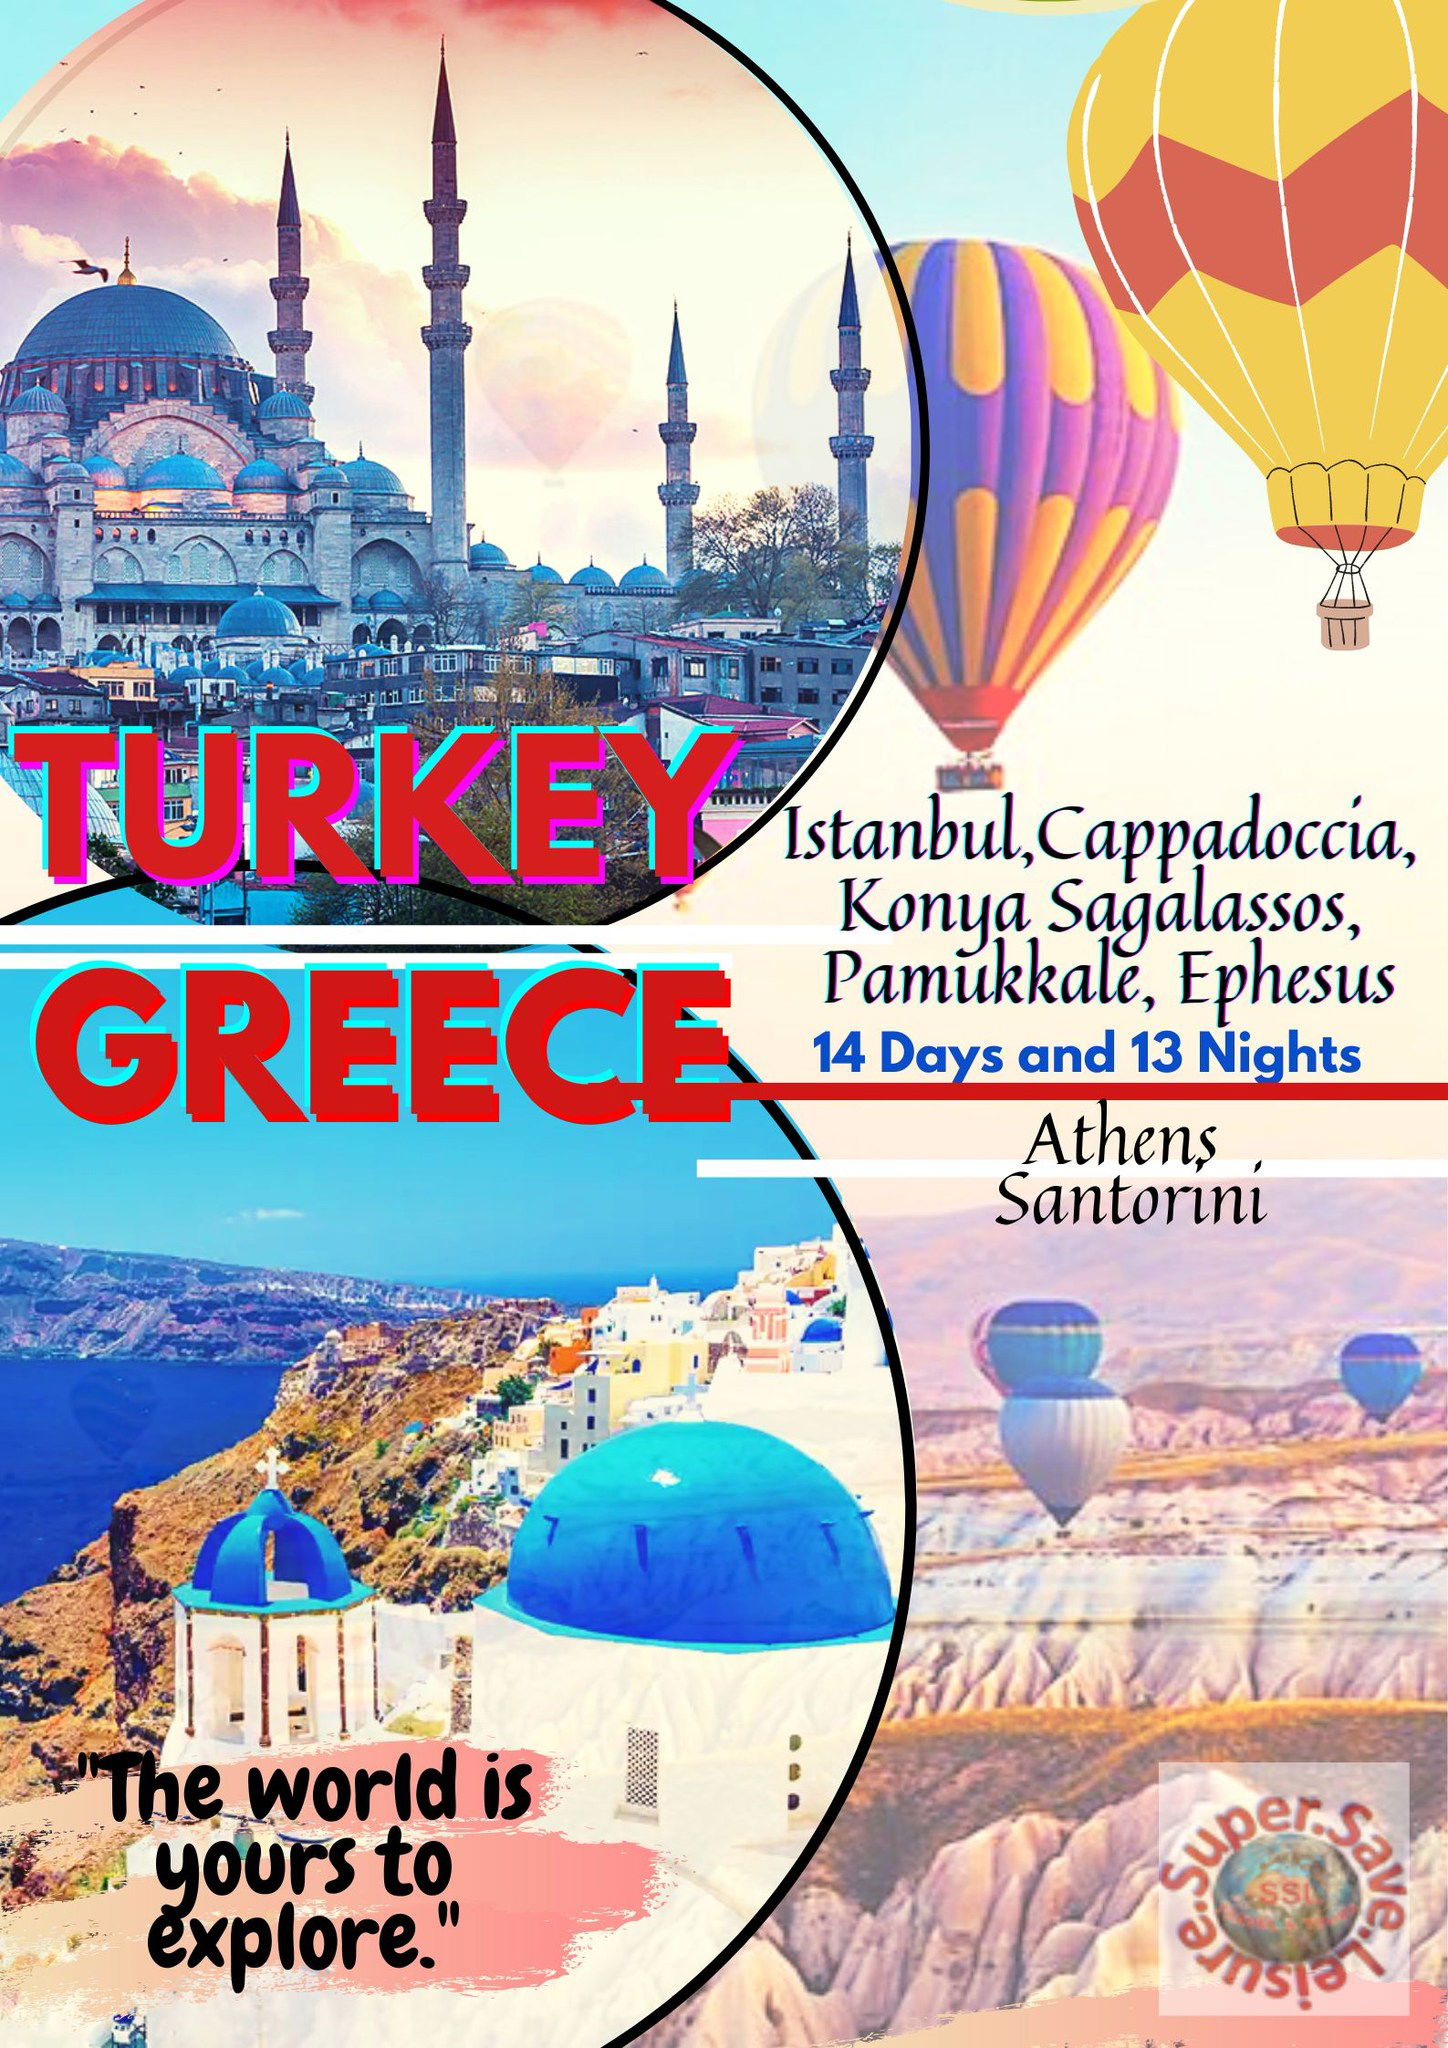 AMAZING TURKEY & GREECE